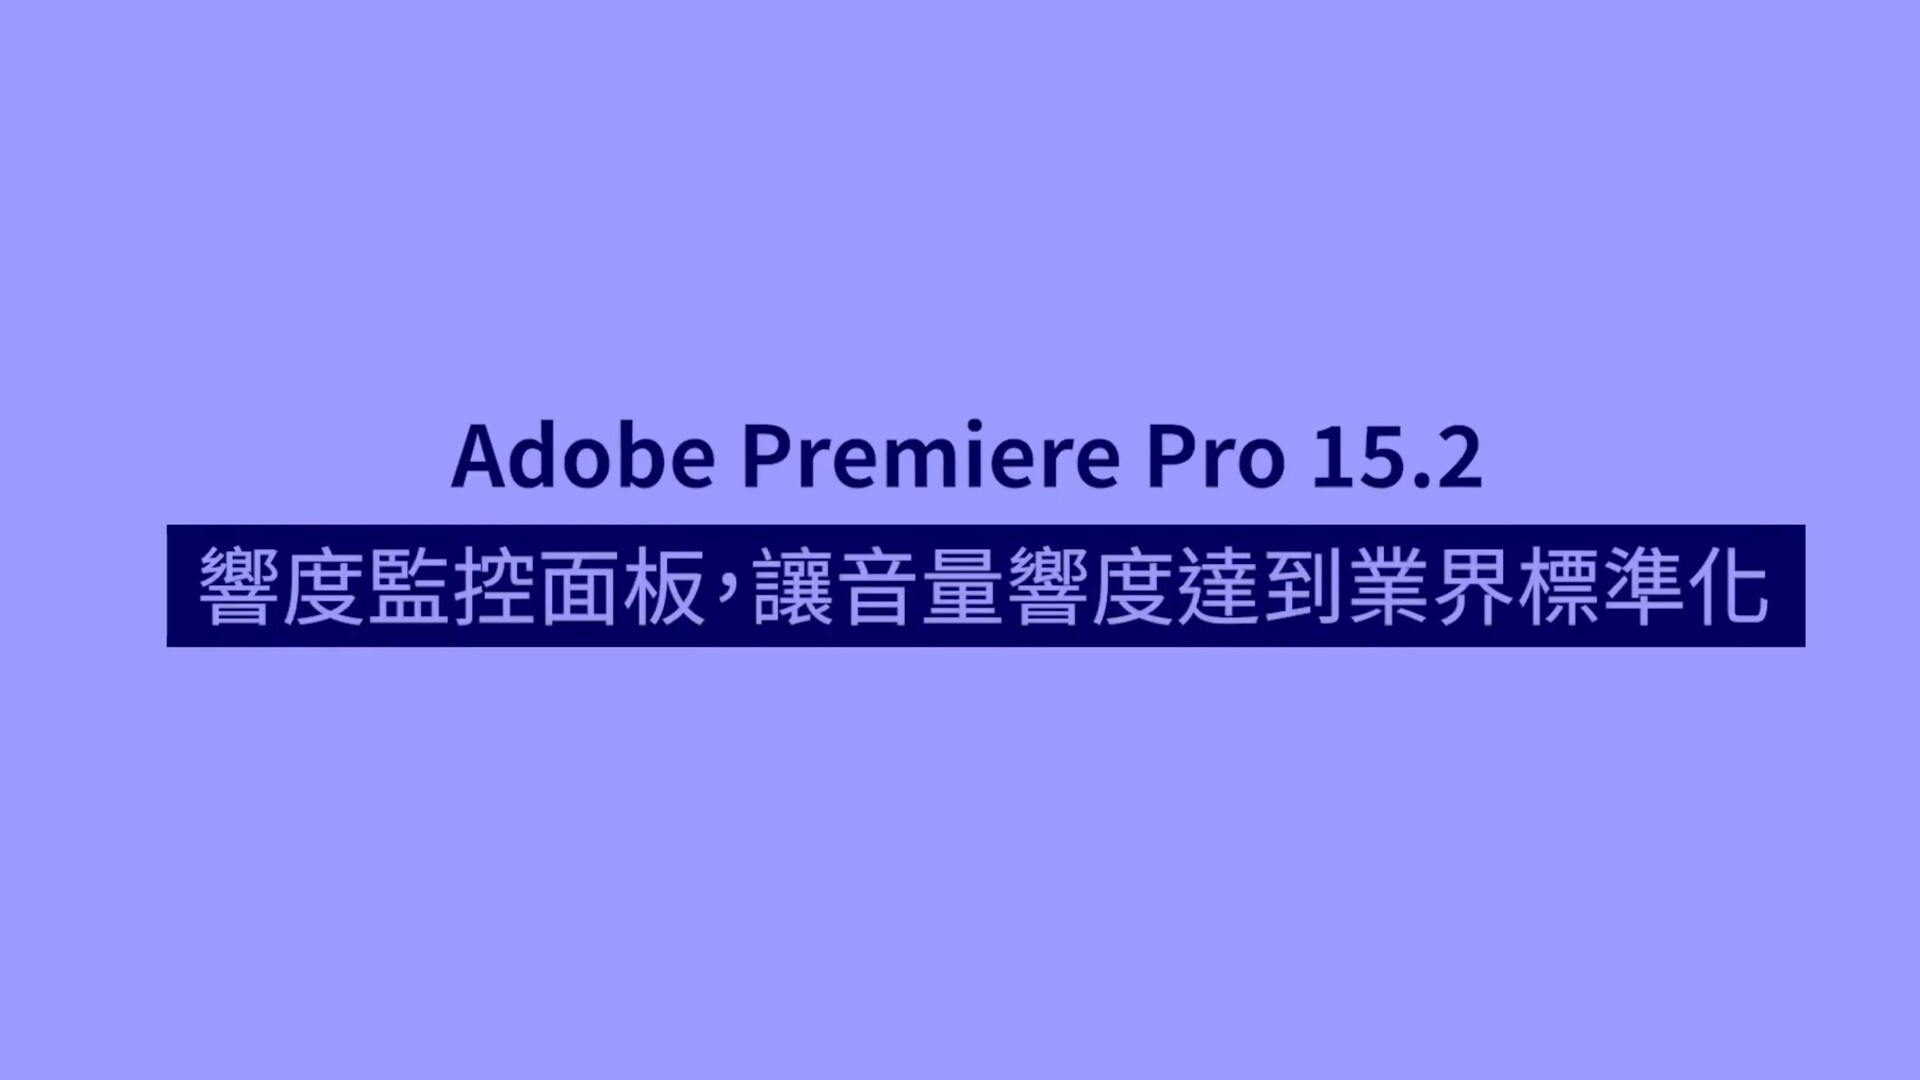 最新版Premiere Pro 15.2新功能介绍-音轨音量响度监控面板